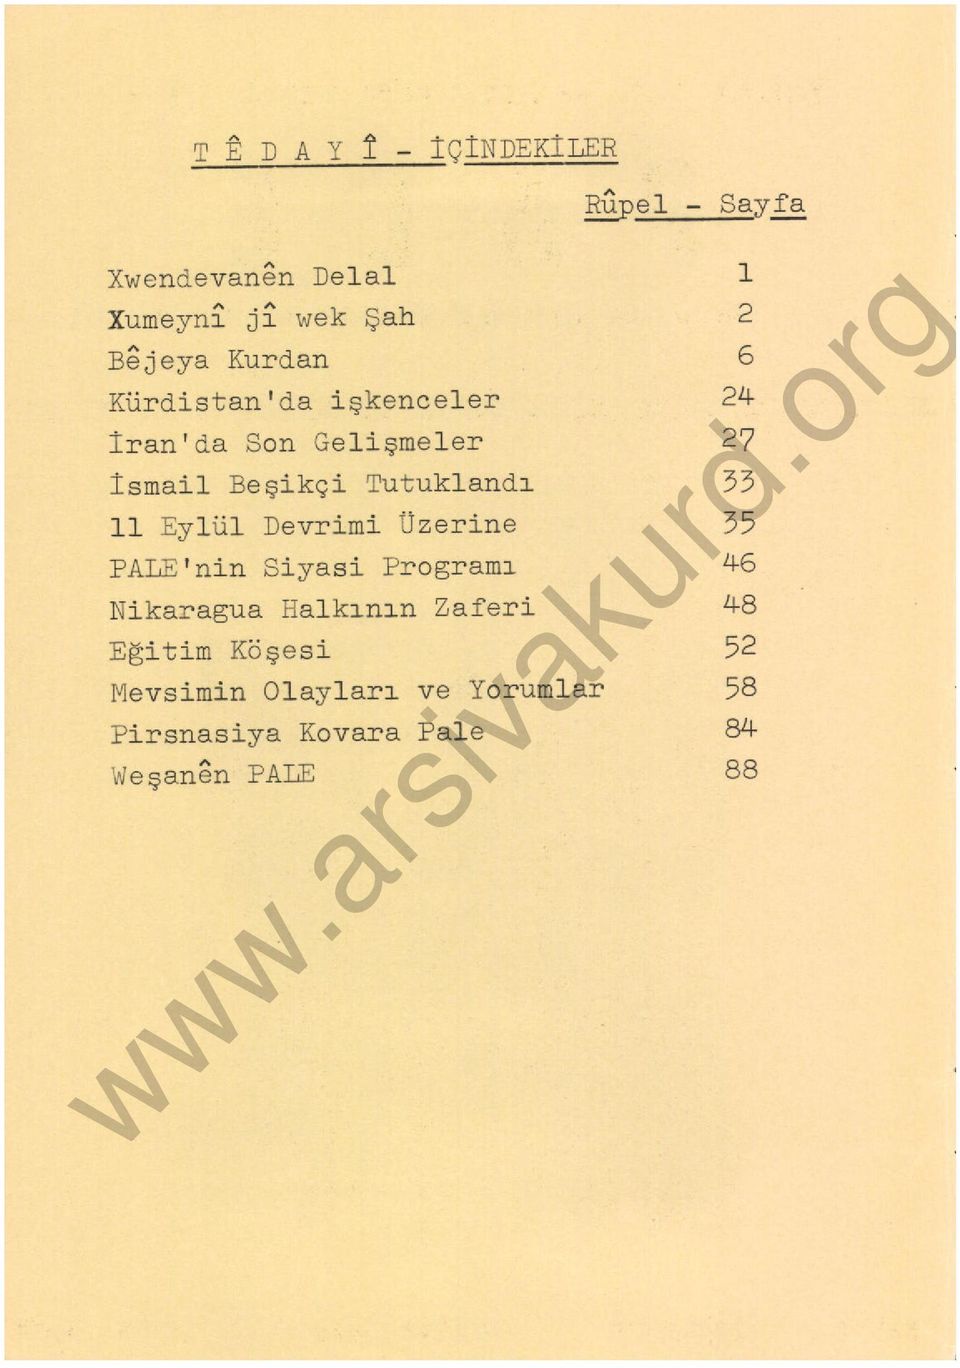 smail Beşikçi Tutukland ı 33 ll Eylül Devrimi Üzerine 35 PALE 'nin Siyasi Programı 46